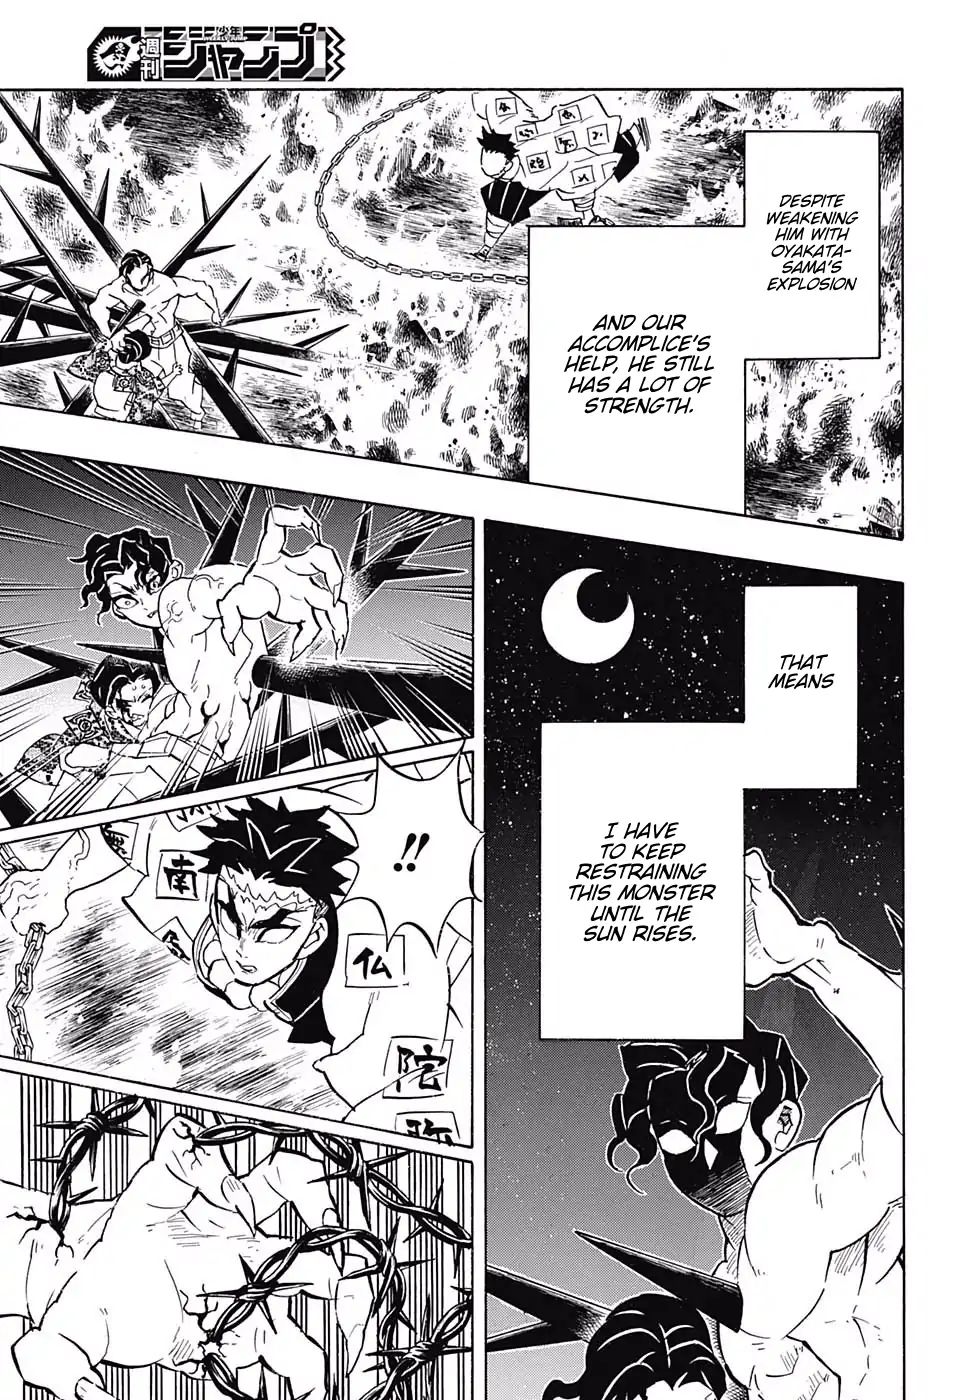 demon slayer kimetsu no yaiba chapter 139 fall 7 - Demon Slayer: Kimetsu no Yaiba, Chapter 139: Fall